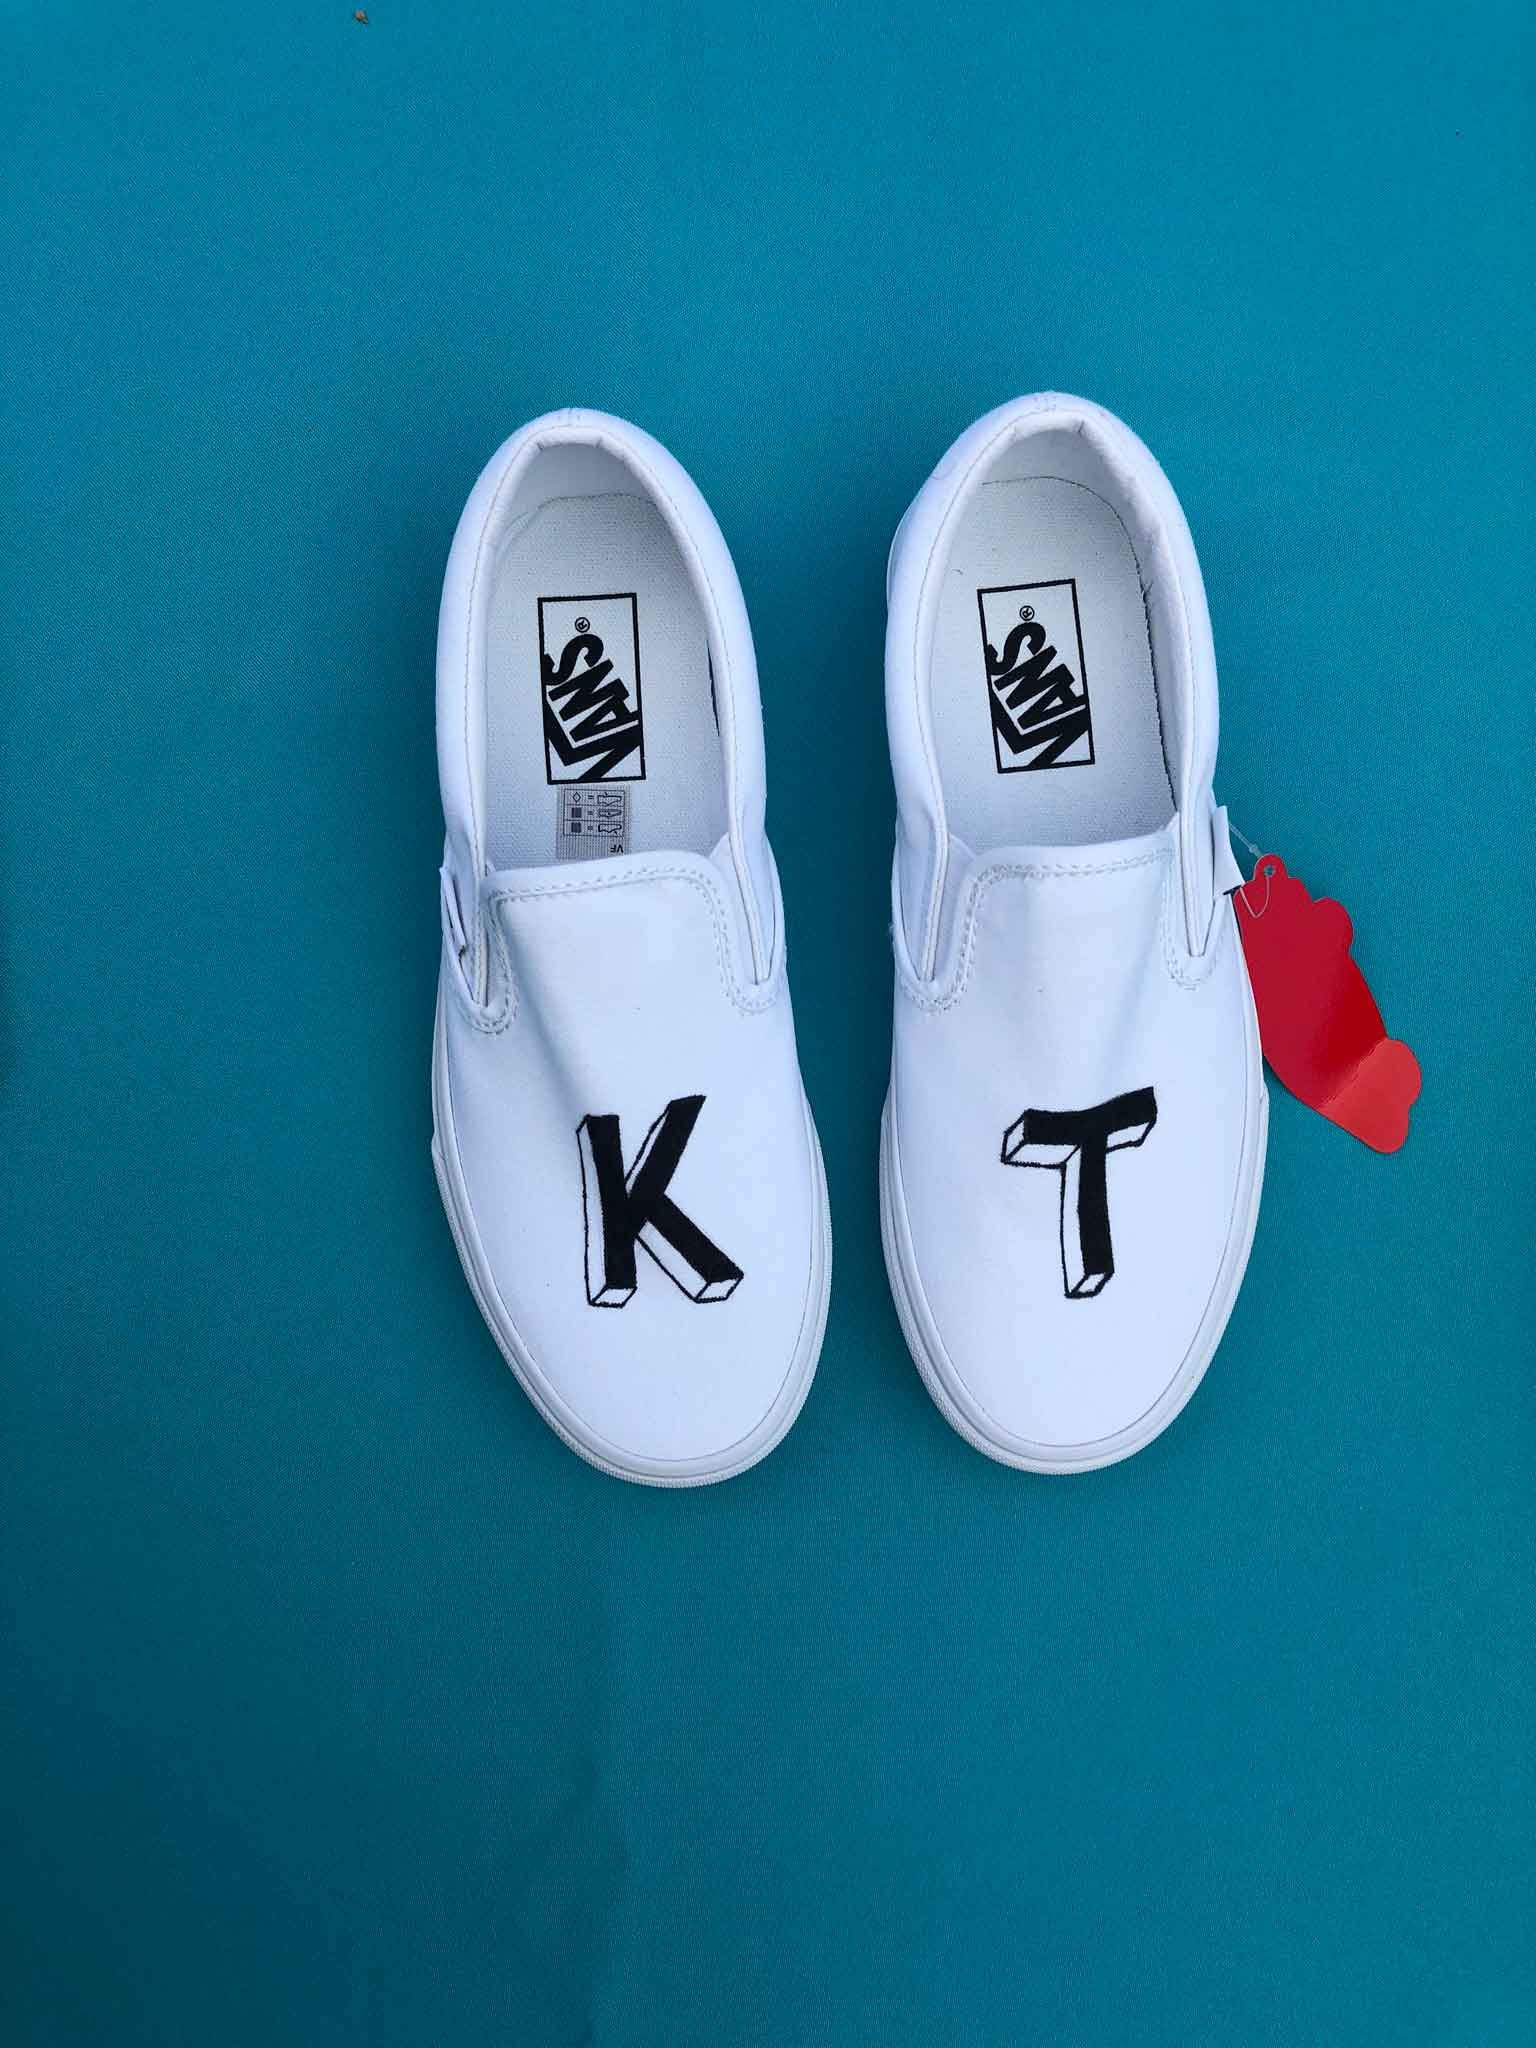 K T vans sneakers live lettering.jpg